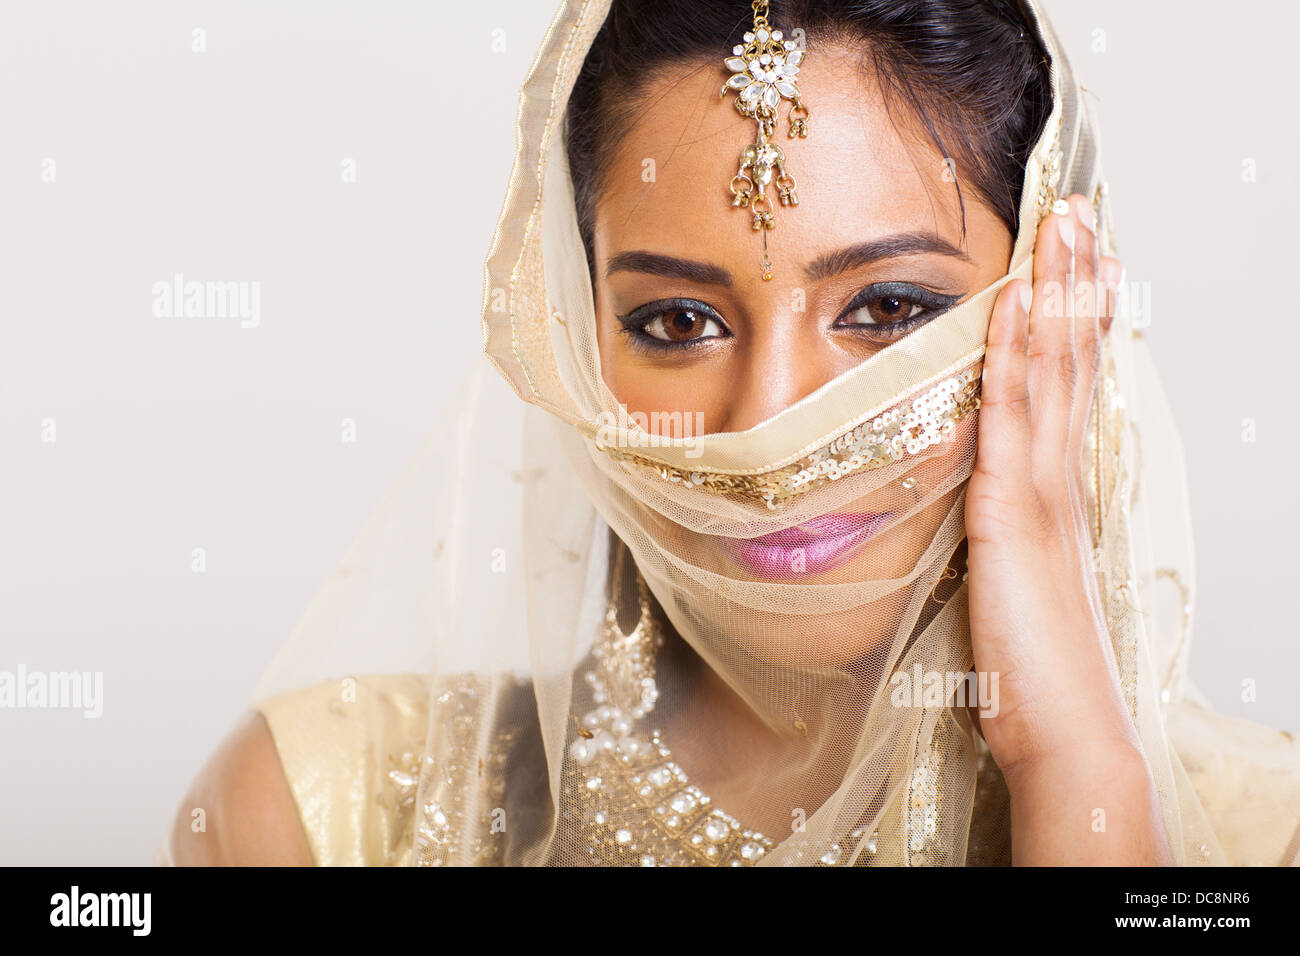 Magnifique portrait de femme indienne en sari couvrant son visage costume Banque D'Images